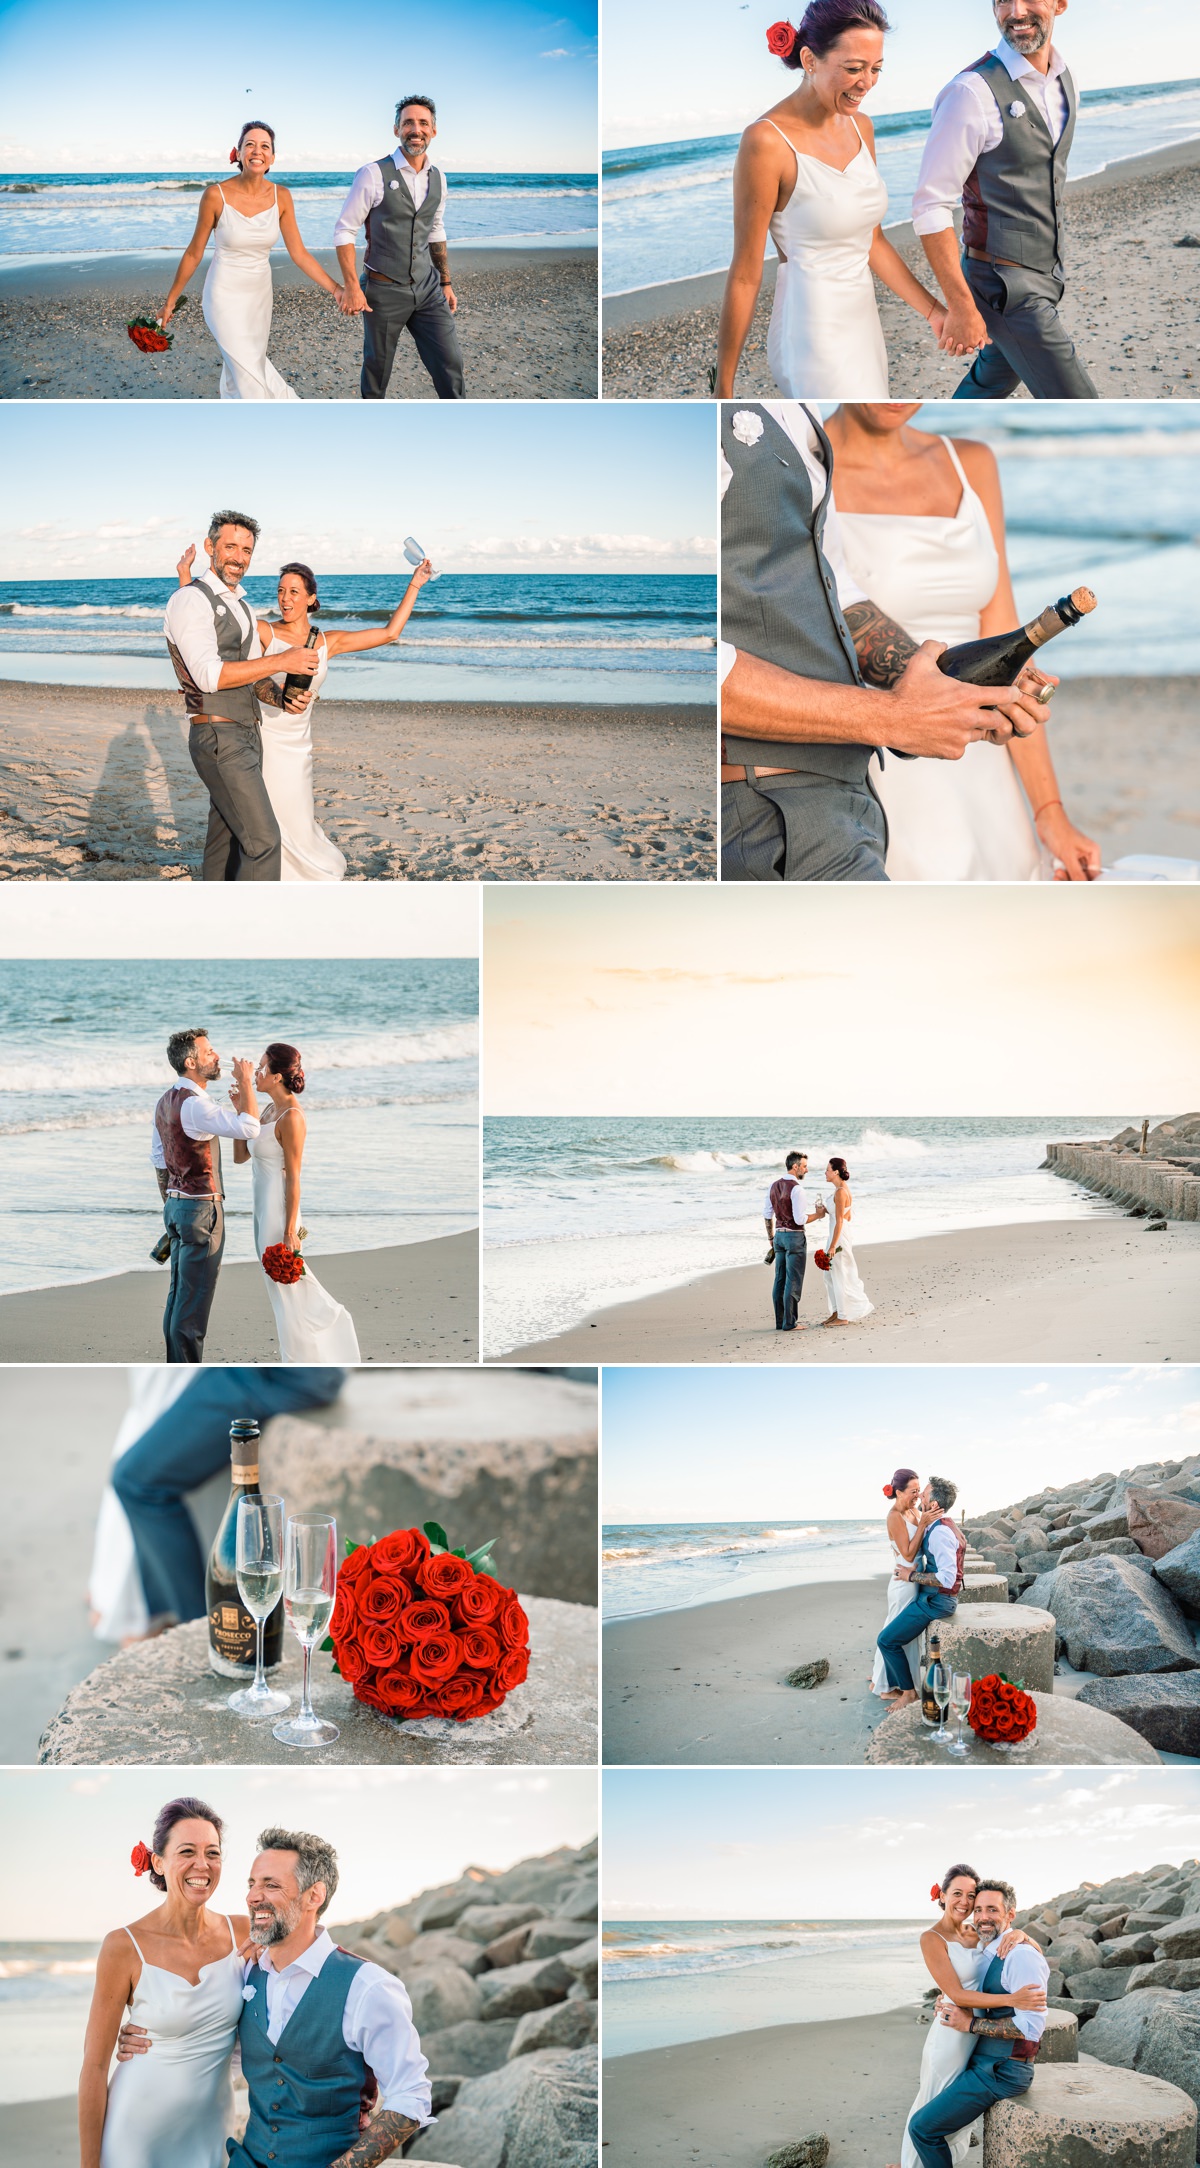 Bride & Groom on the beach - Wedding photos - Fort Fisher - Beach Wedding - Ocean - Bride - Groom - Sunset - Micro Weddings - Fort Fisher Photographers -  Chris Lang Photography